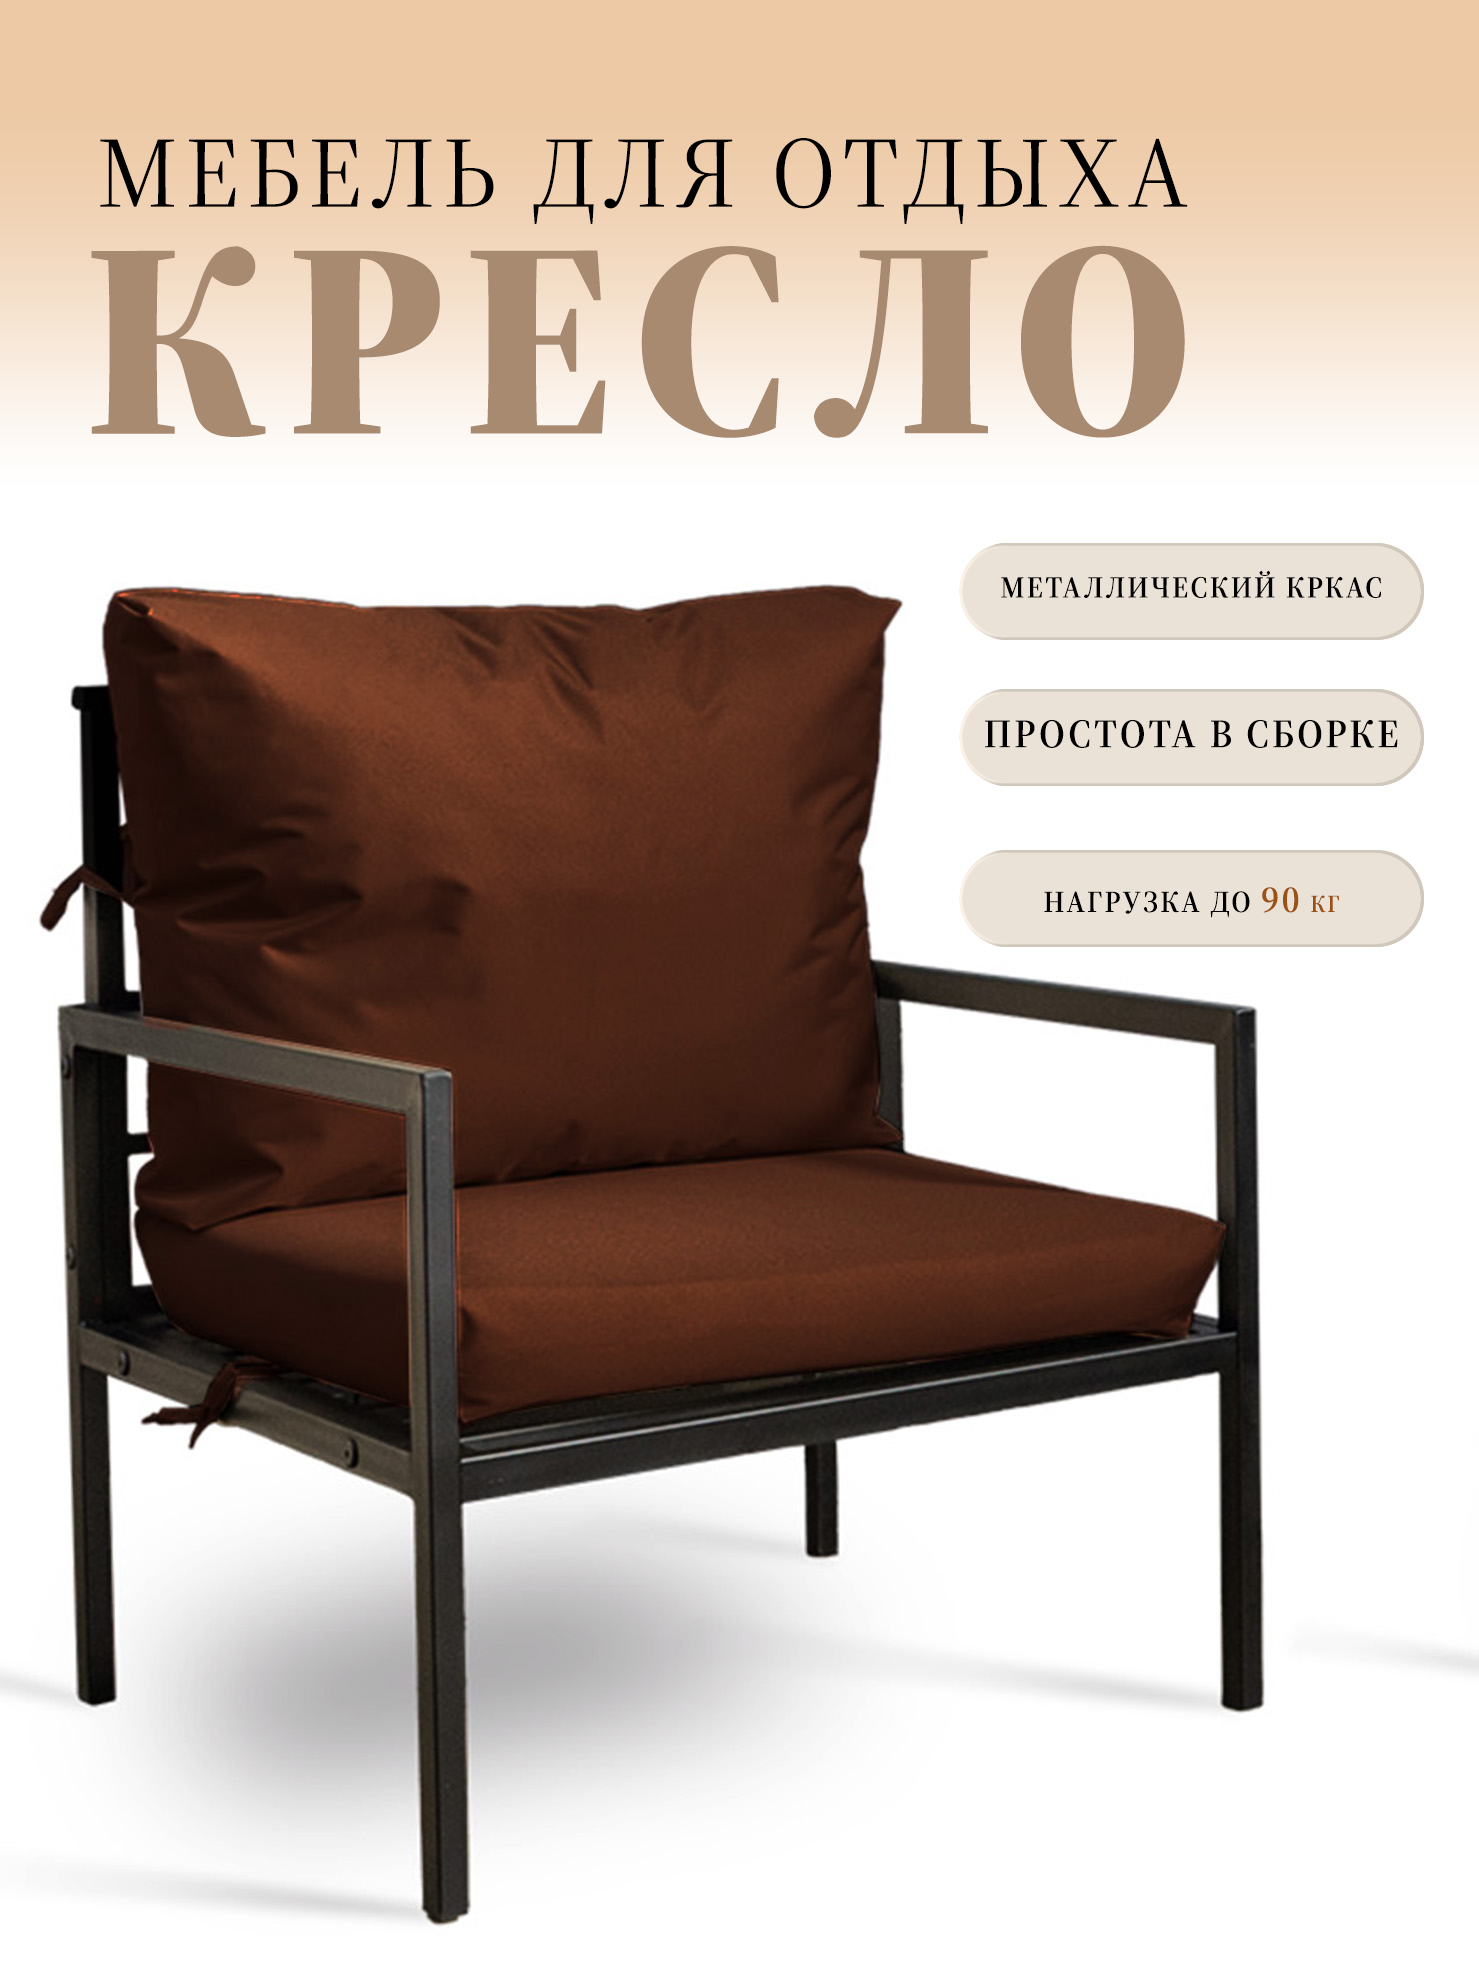 Кресло для отдыха MilLi, сборное, уличное, металлокаркас, цвет коричневый